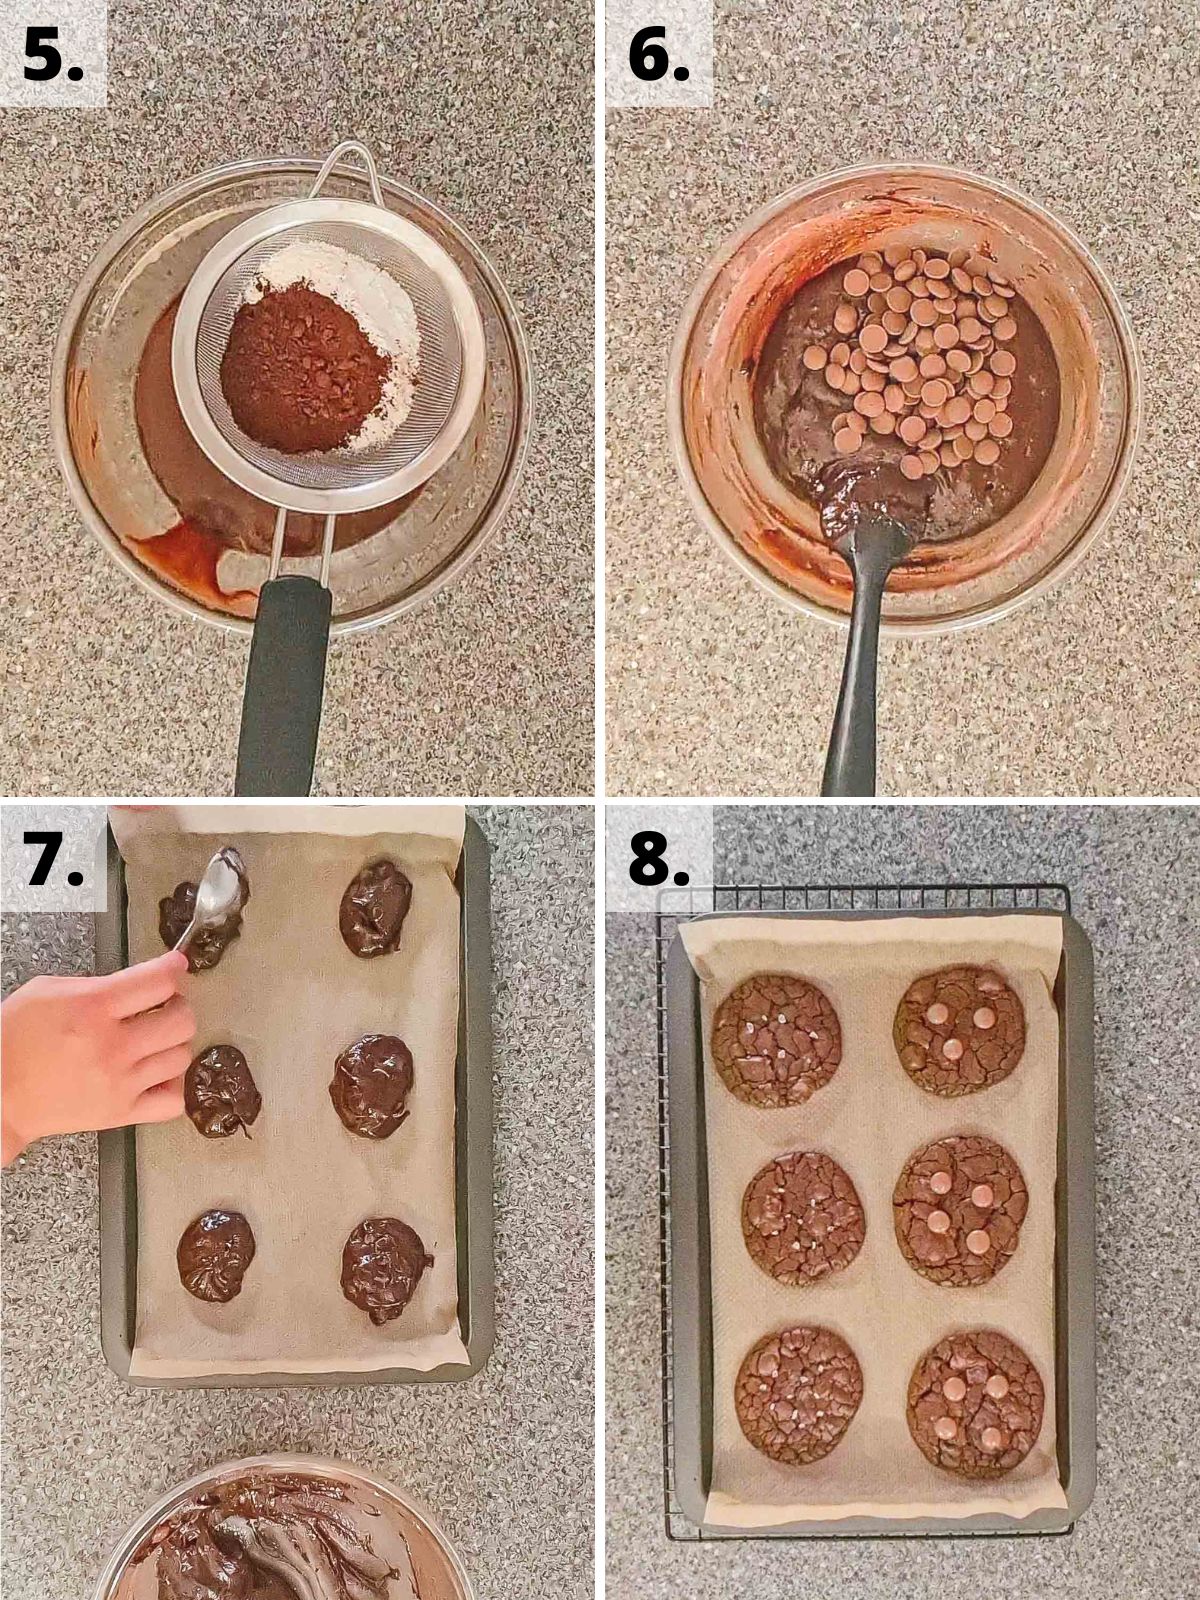 gluten free chocolate brownie cookies recipe method steps 5 to 8.